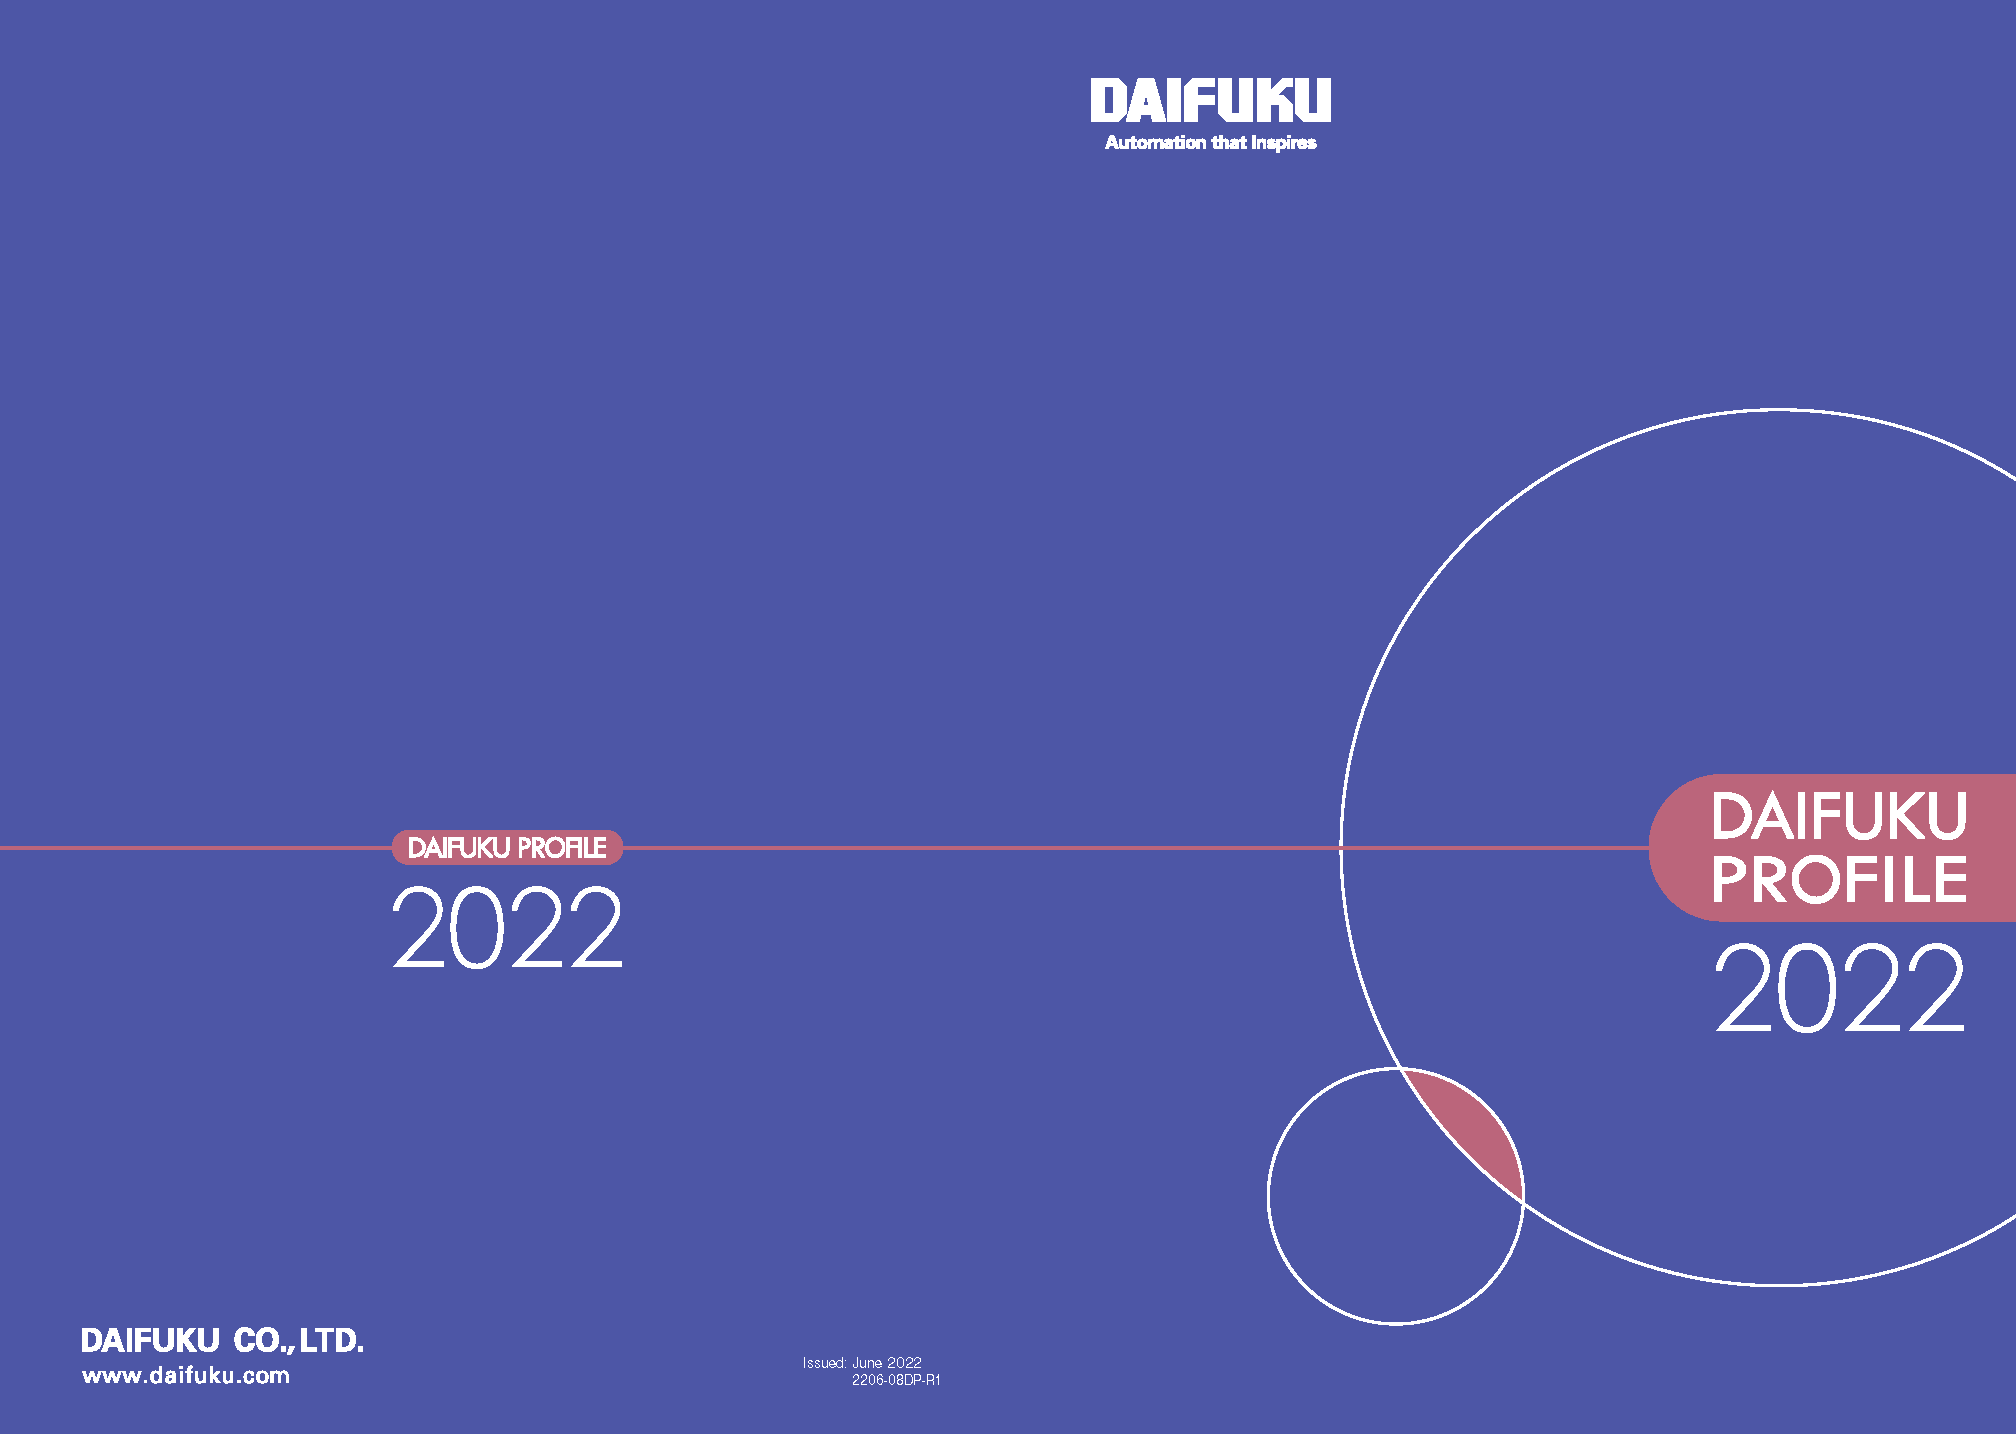 DAIFUKU PROFILE 2022